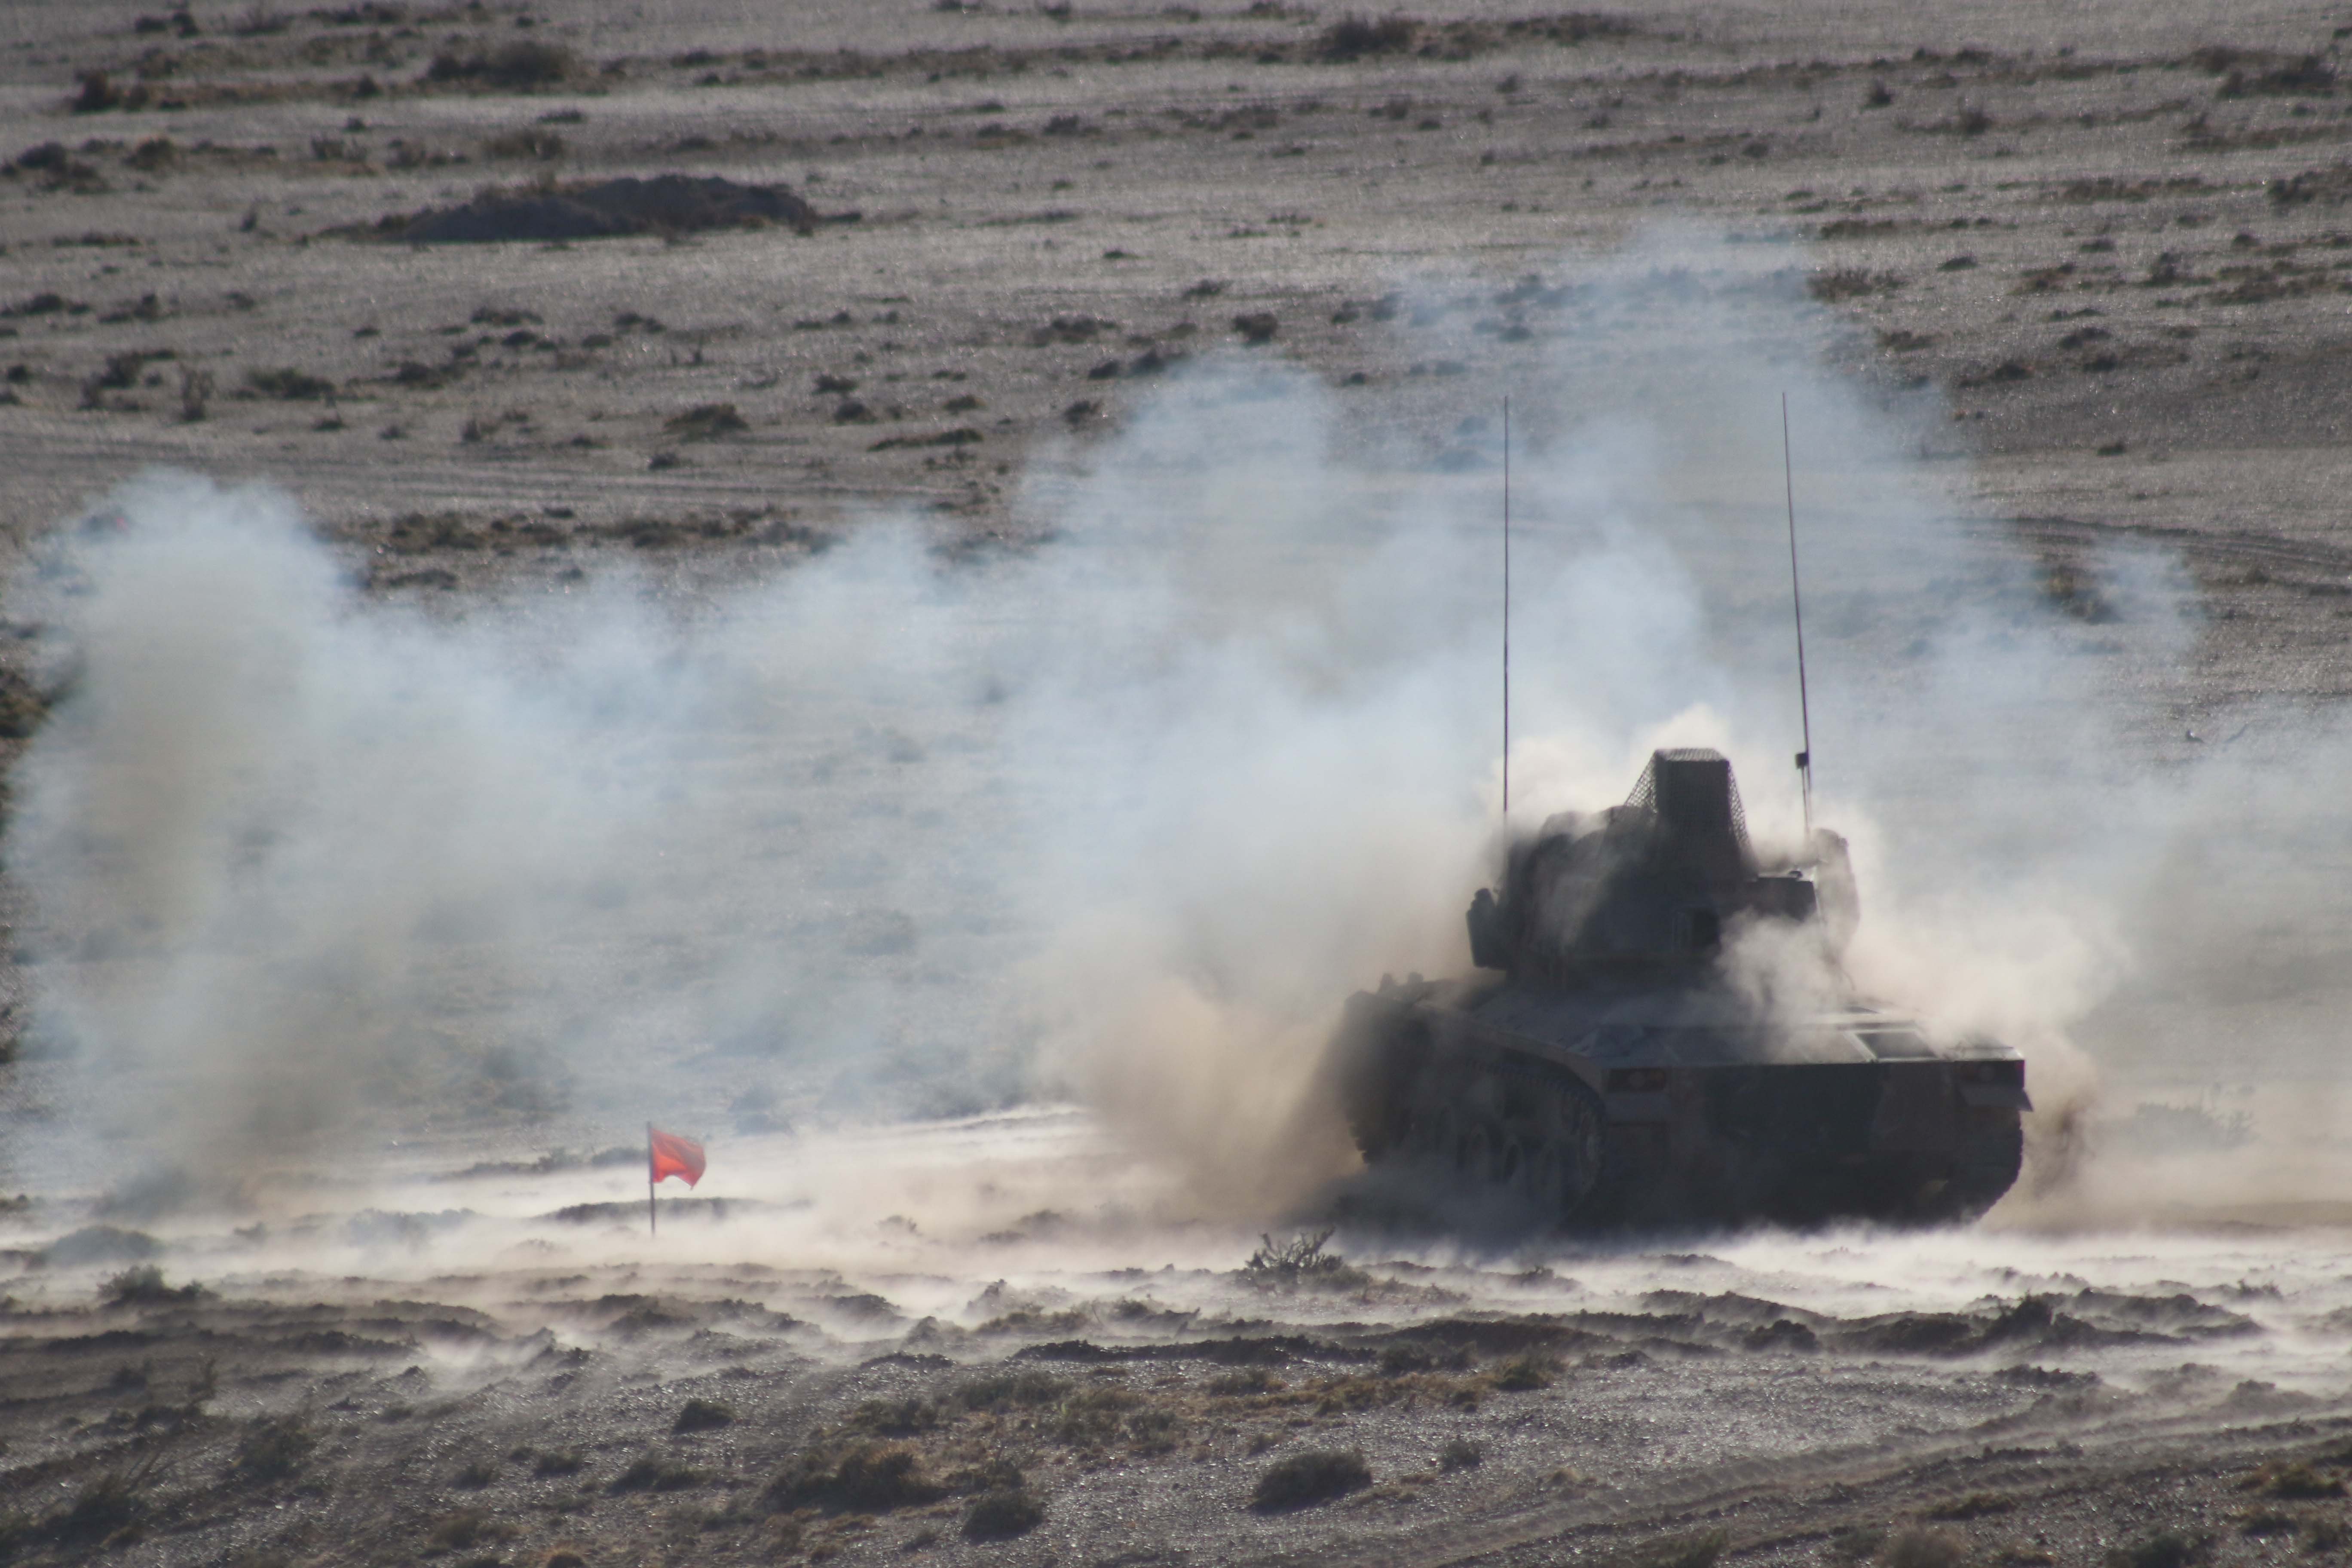 Ejercicio final de la Brigada Mecanizada IX en Chubut tanque terreno